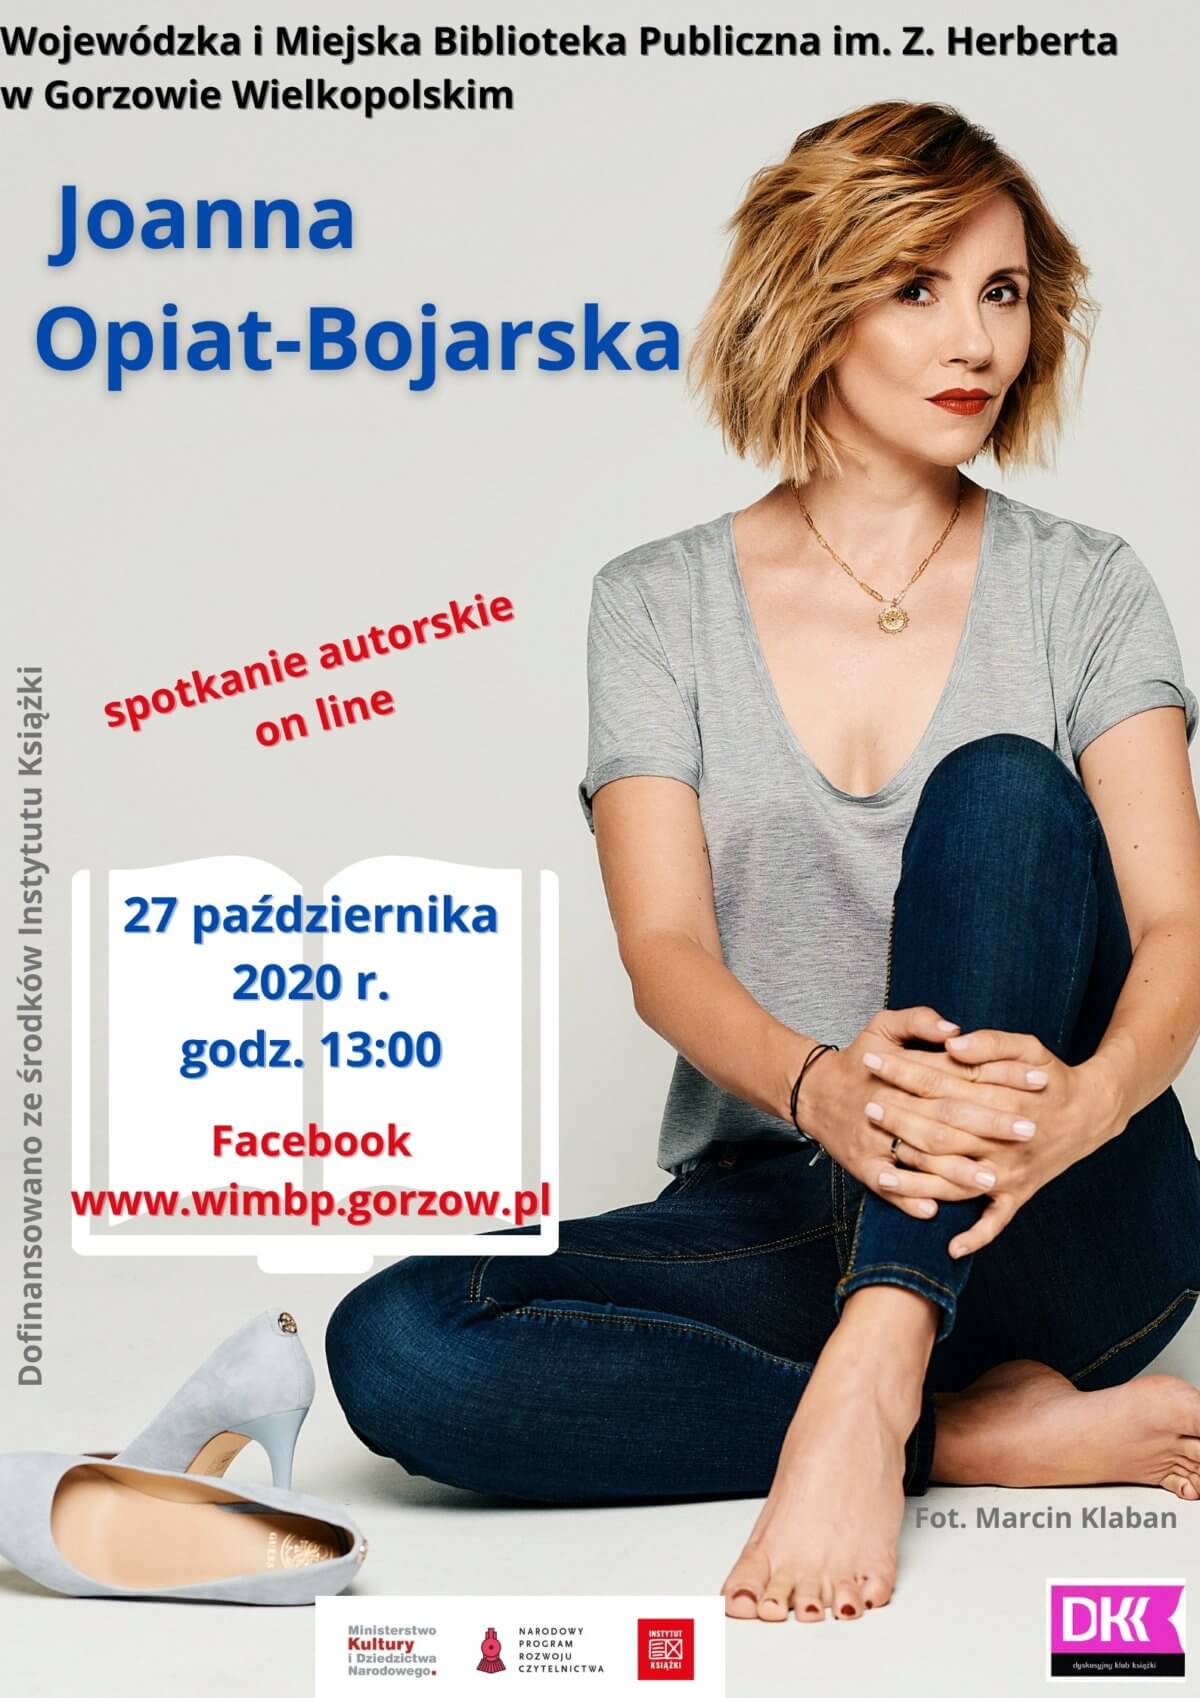 27 października 2020 r. o godzinie 13:00 zapraszamy na spotkanie autorskie on line z Joanną Opiat-Bojarską.